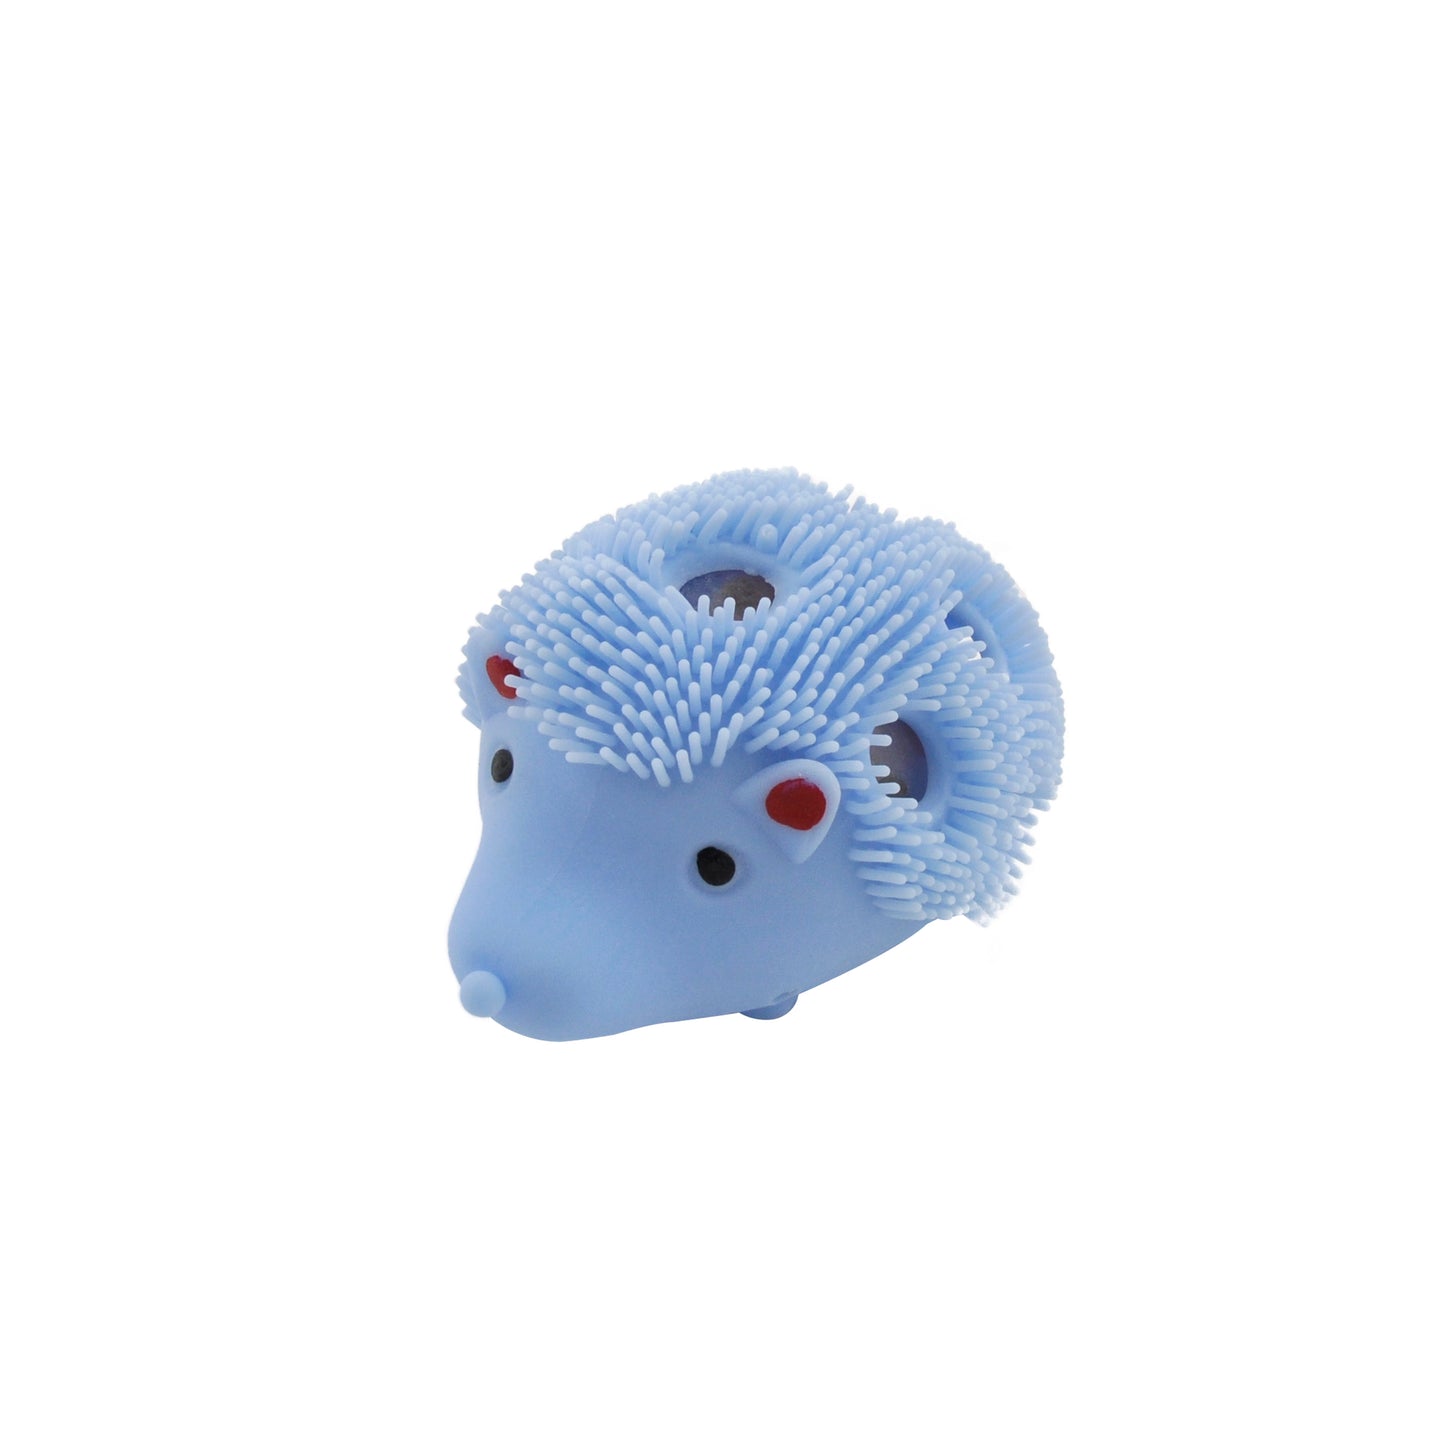 Squishy Hedgehog - Blue